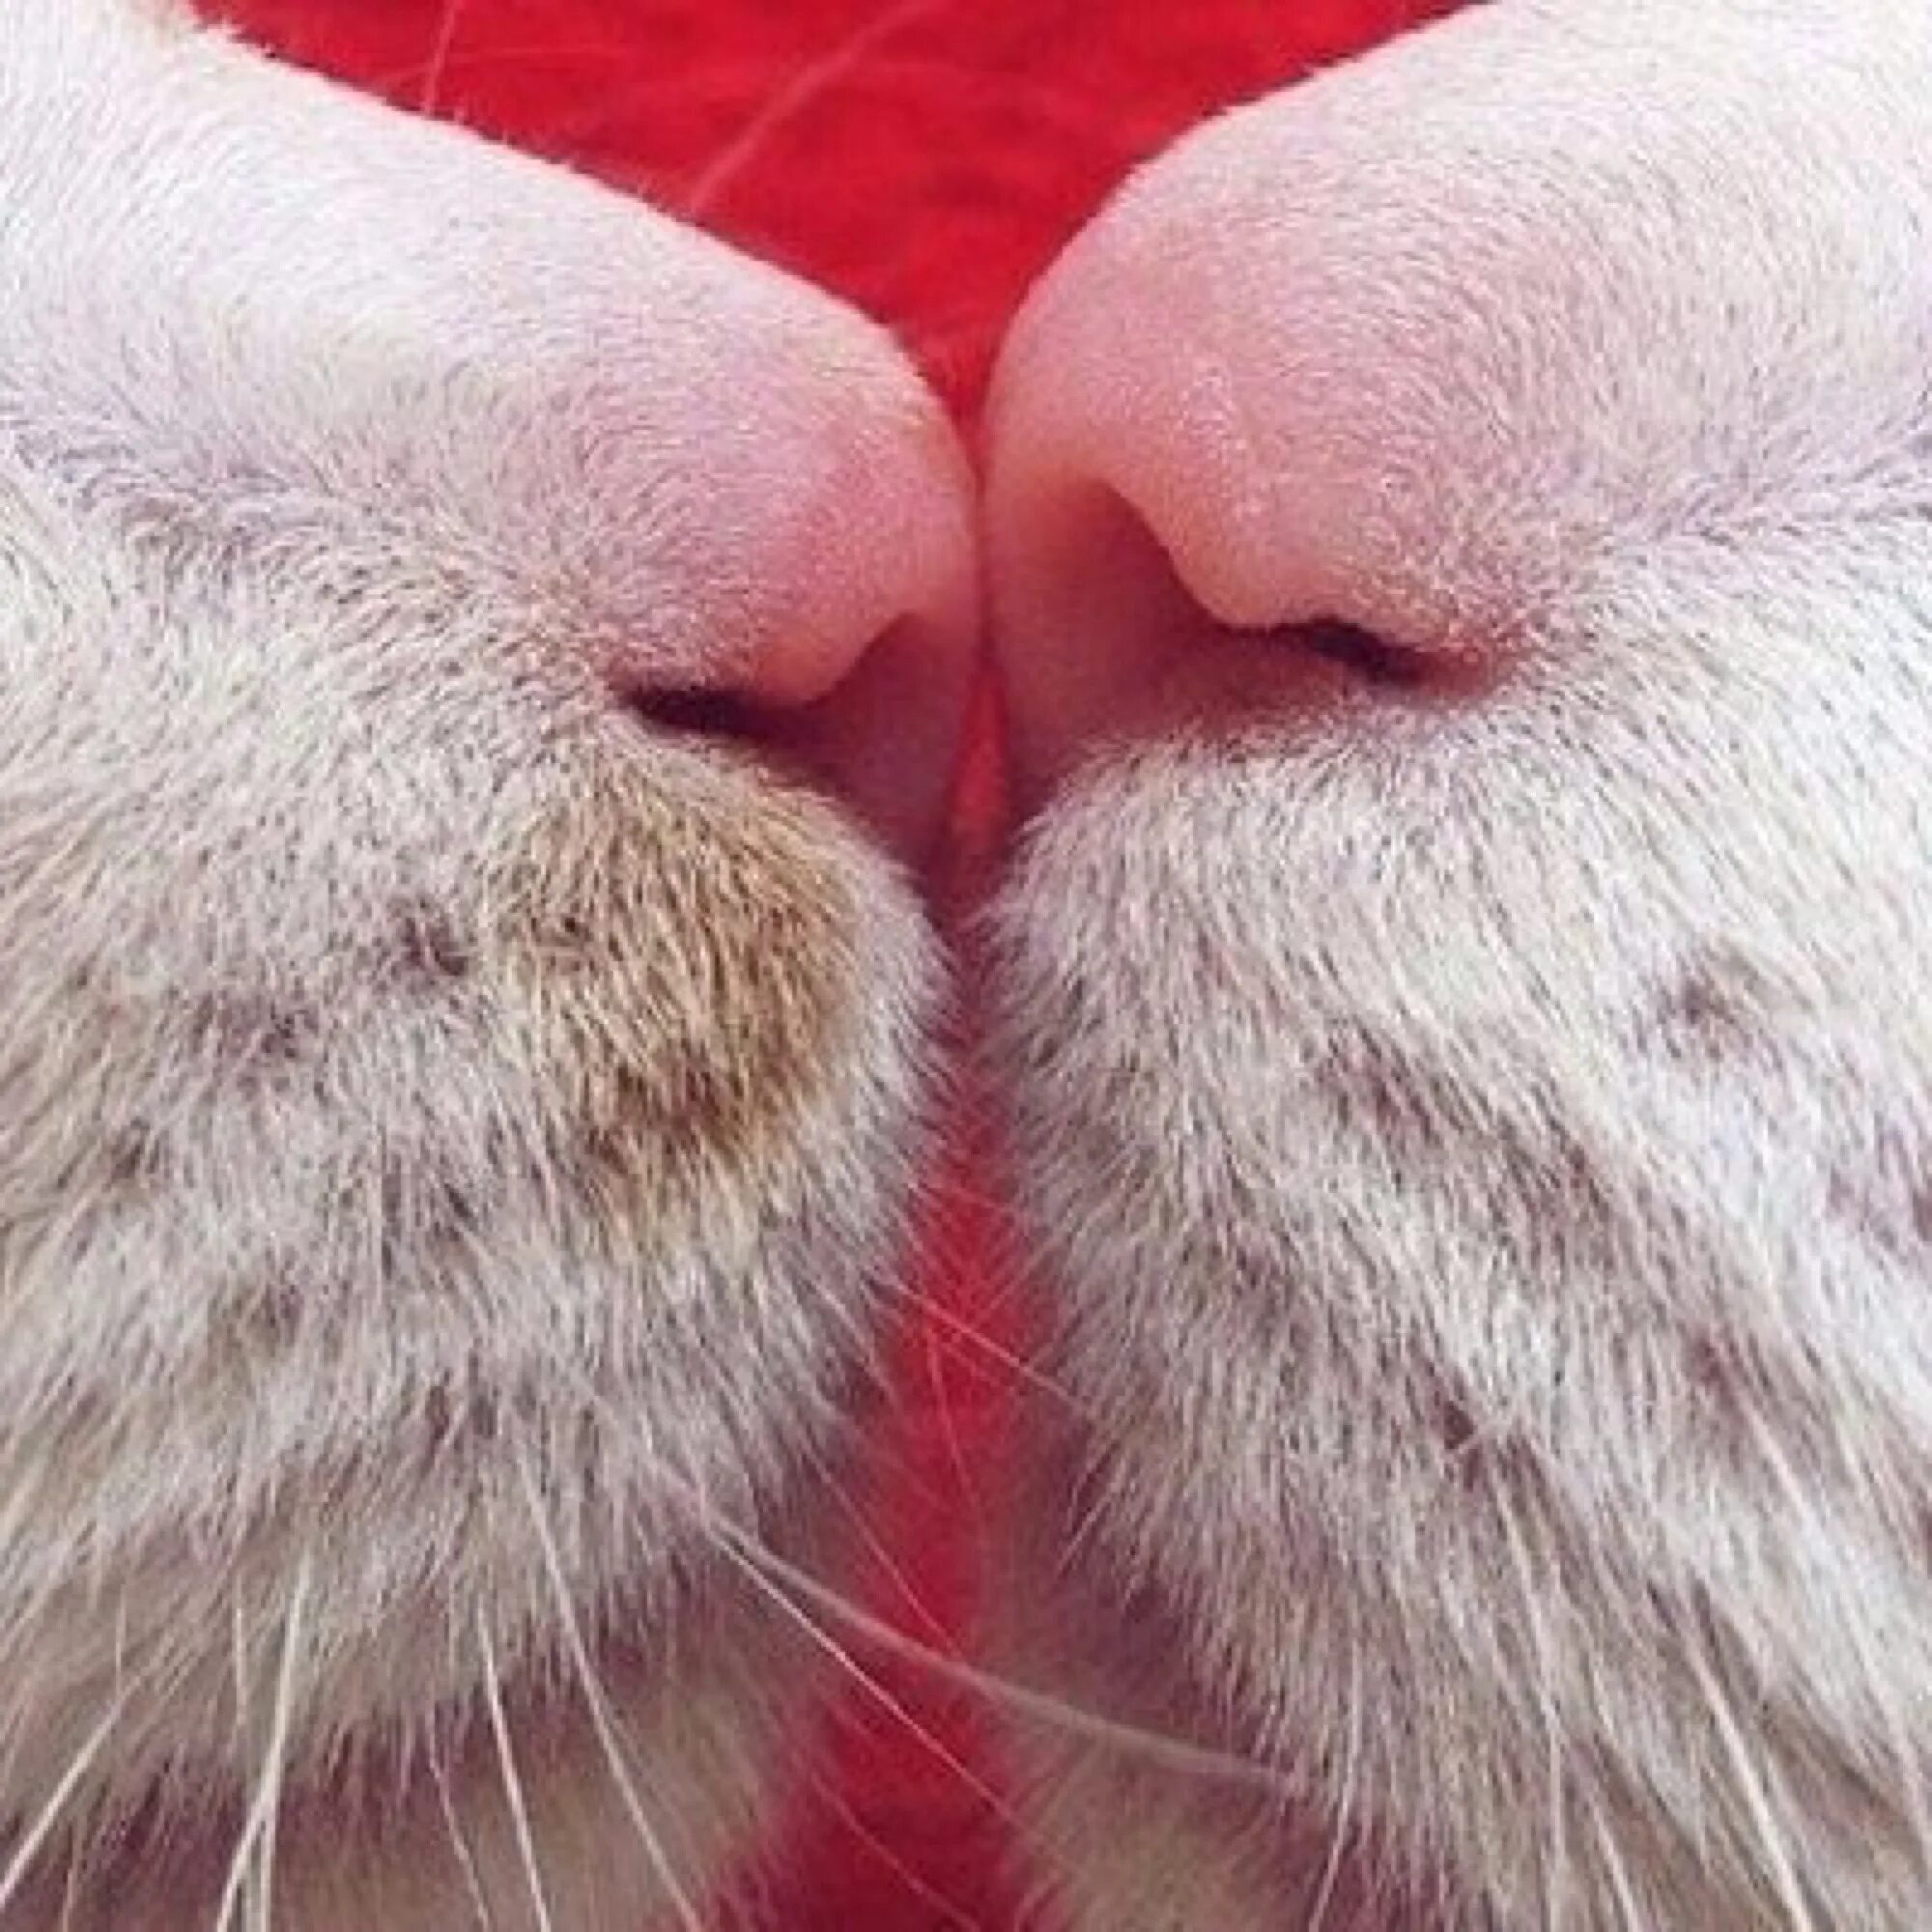 Новая киса. Кошачий носик. Носики котиков. Нос кота. Поцелуй кота.